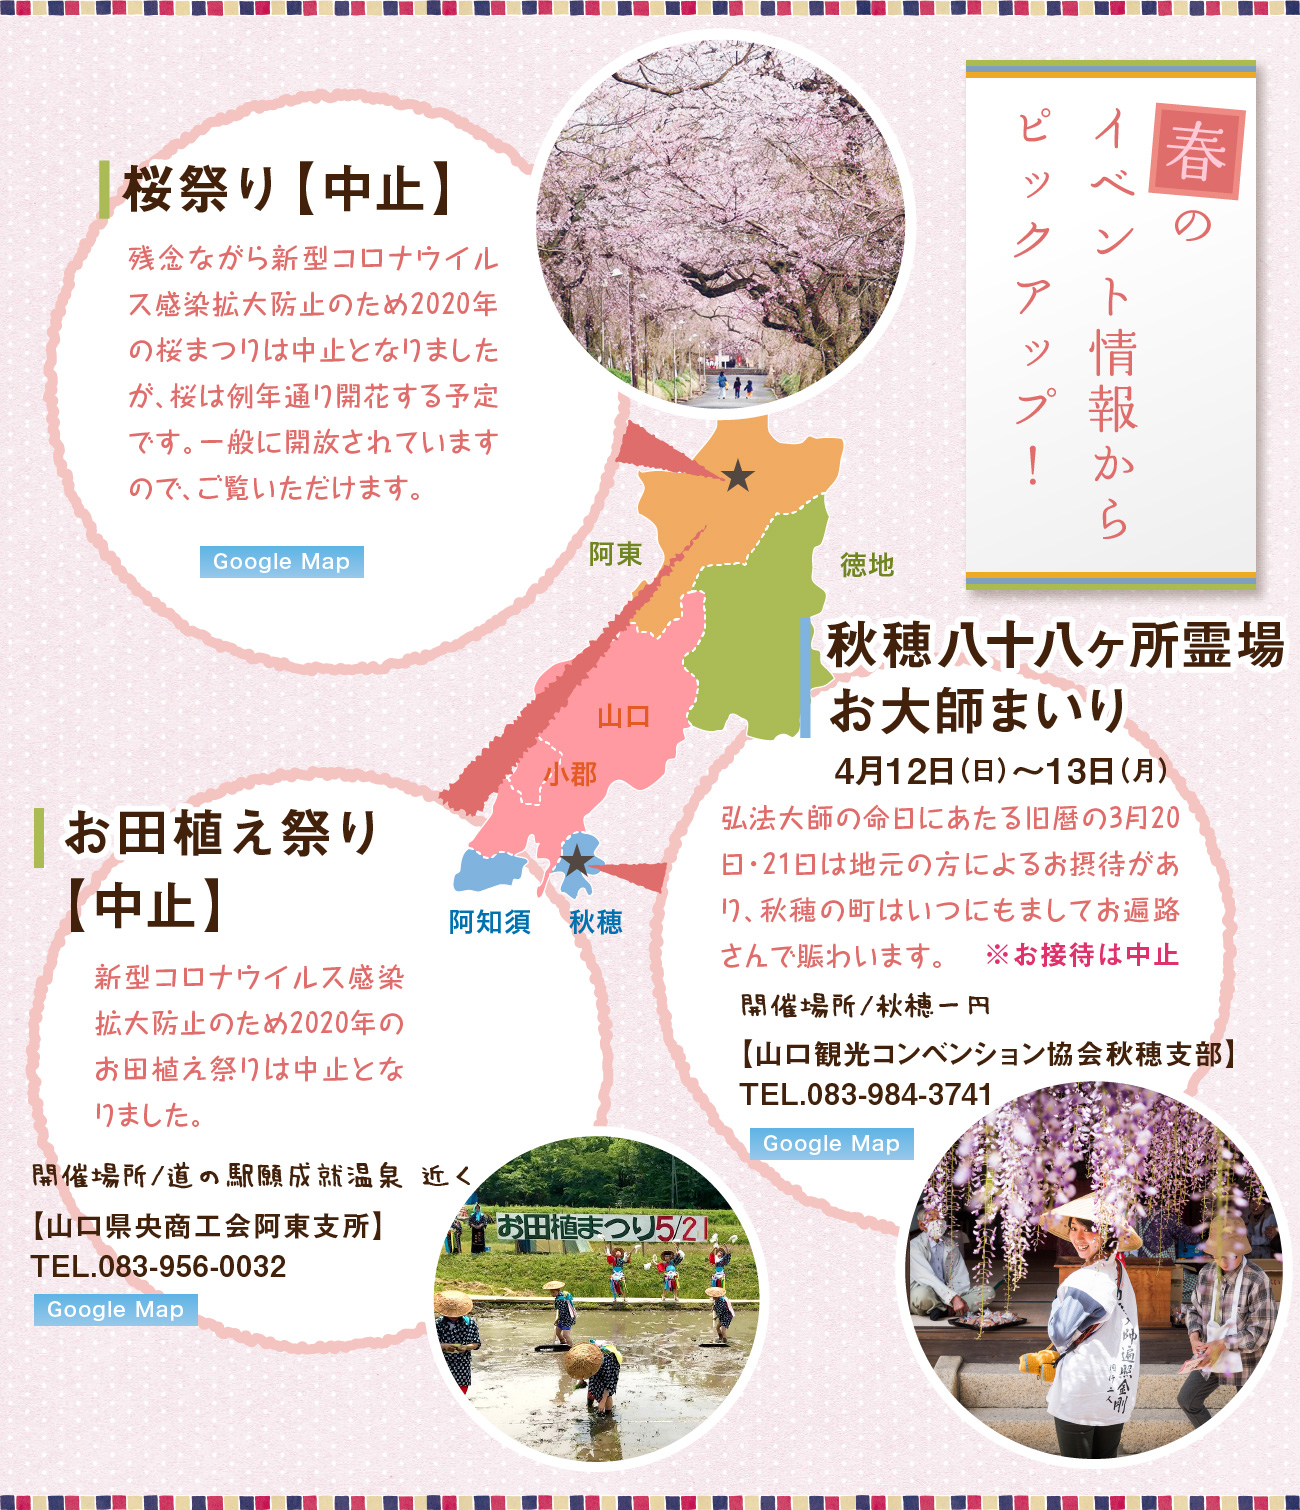 山口市観光情報サイト 西の京 やまぐち イベントカレンダー 春のイベント情報